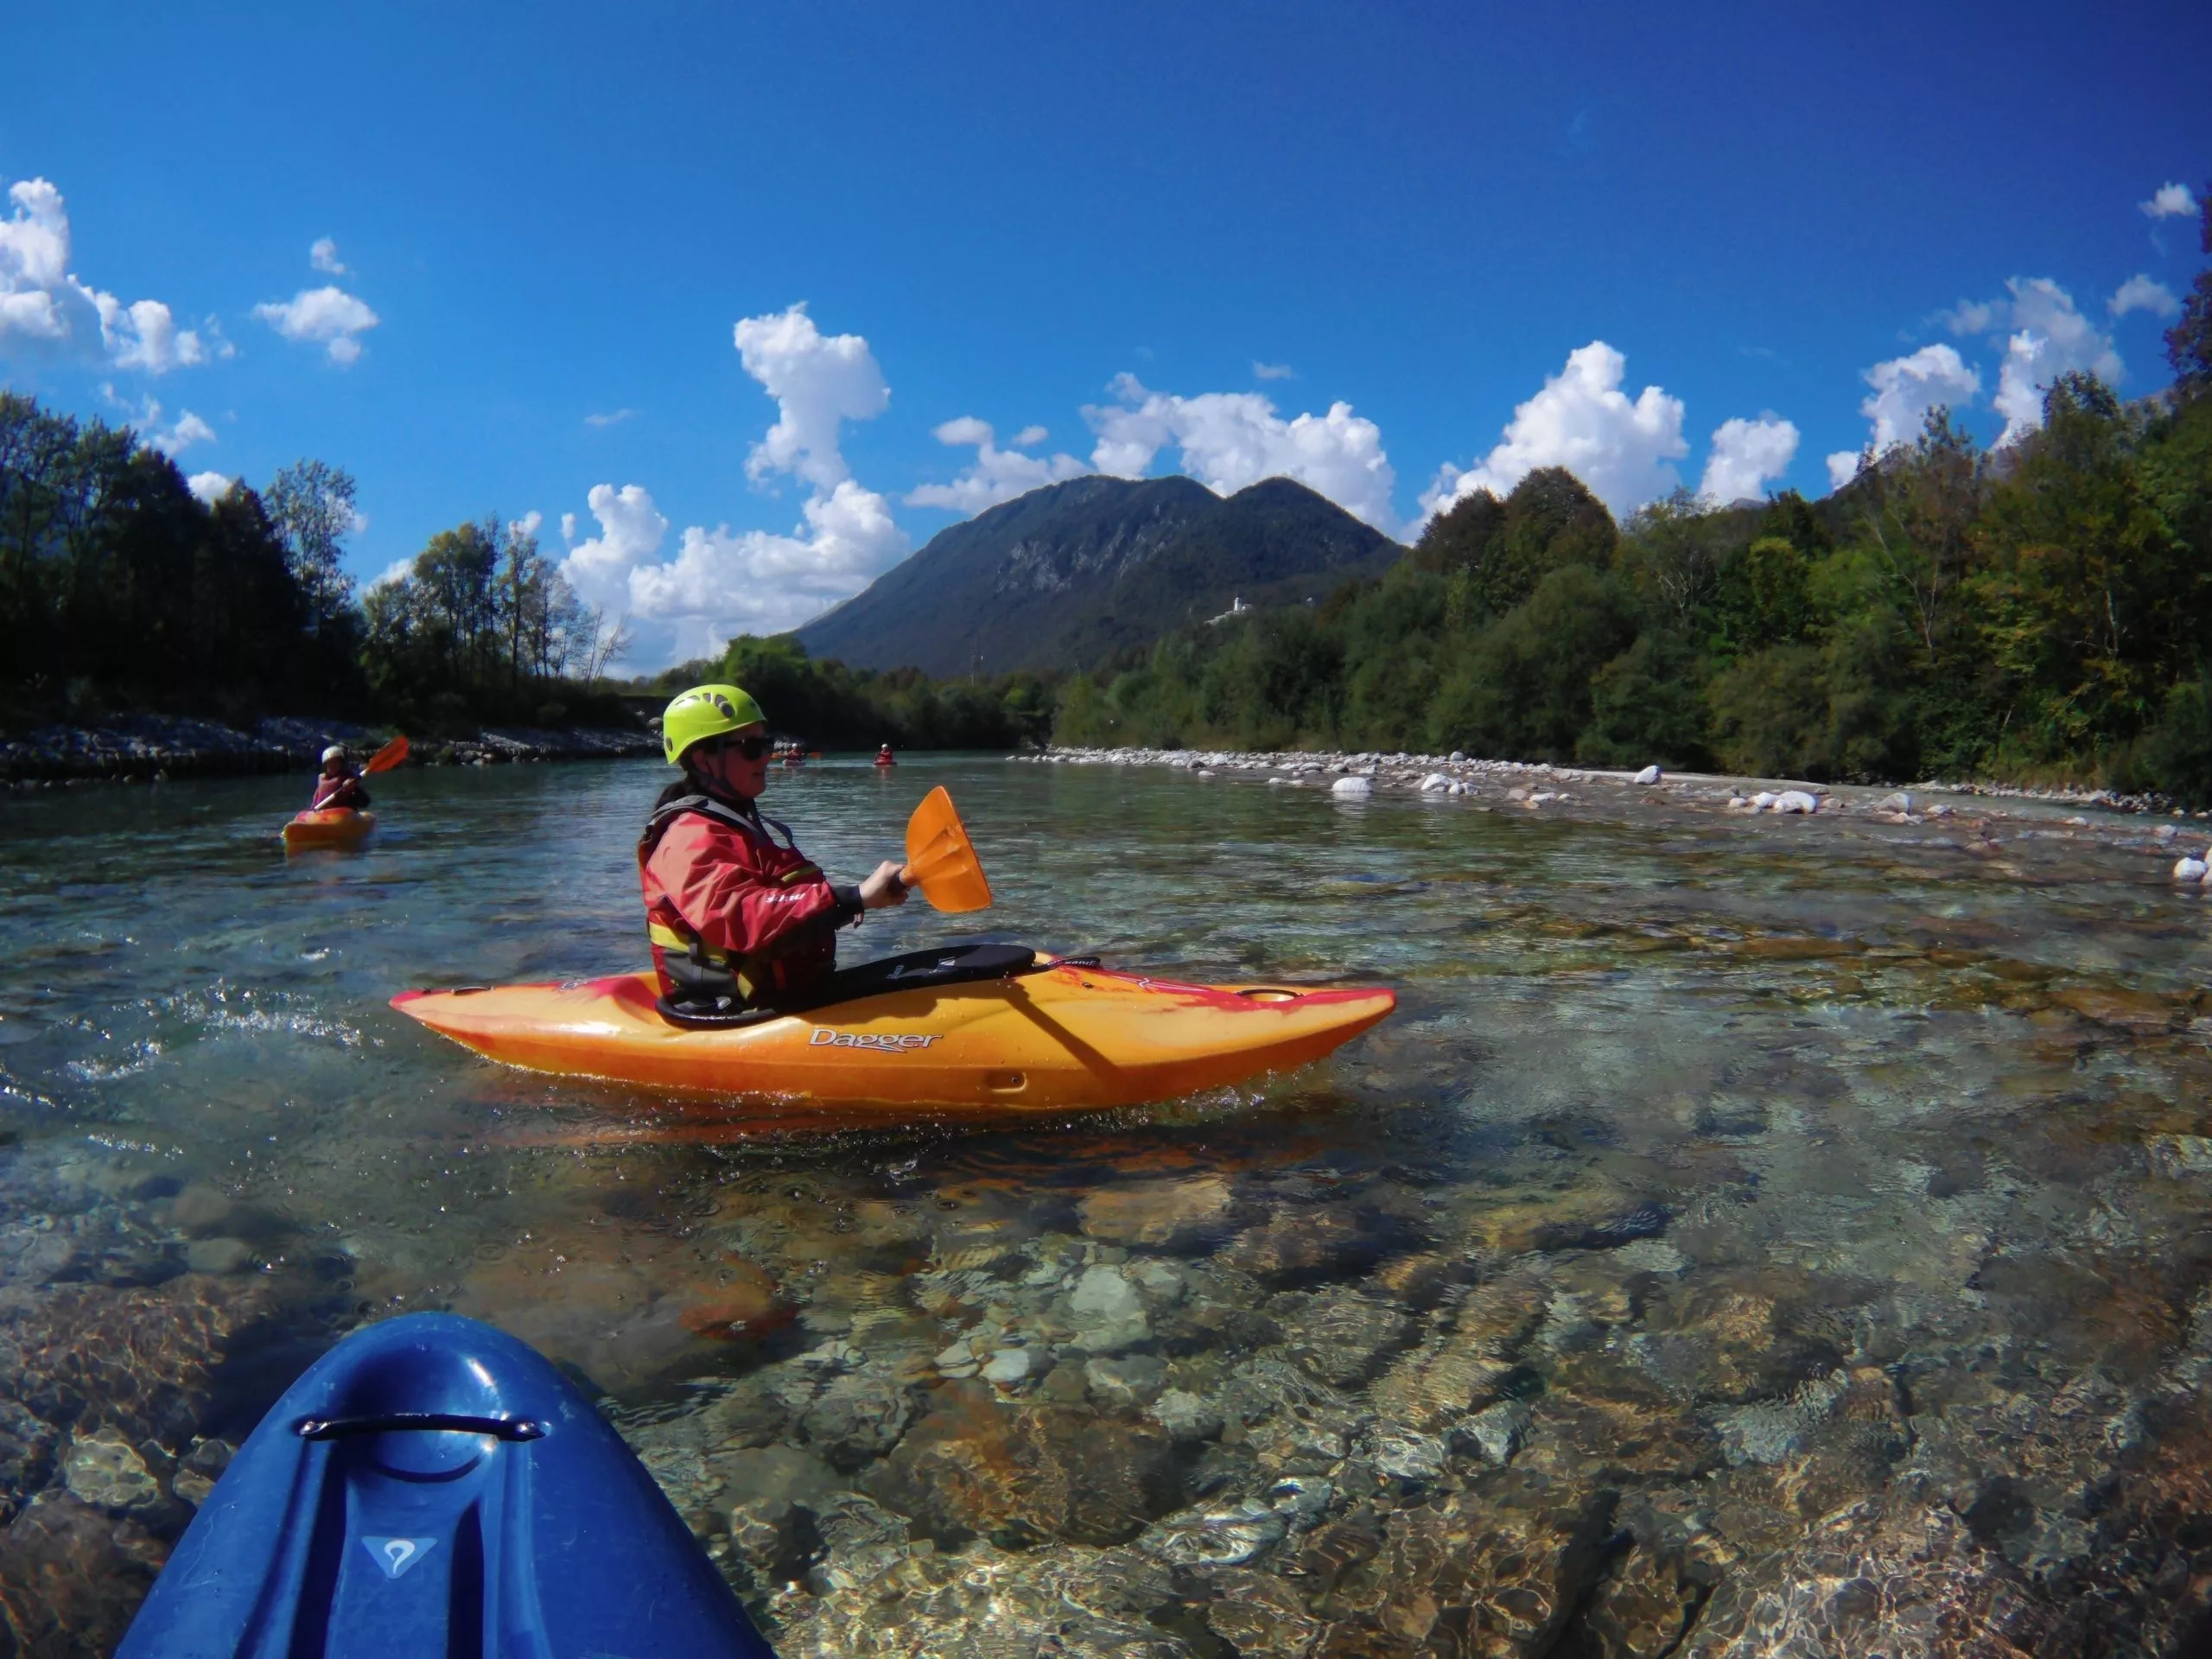 Kobarid Kayak School in Slovenia, Europe | Kayaking & Canoeing - Rated 0.9